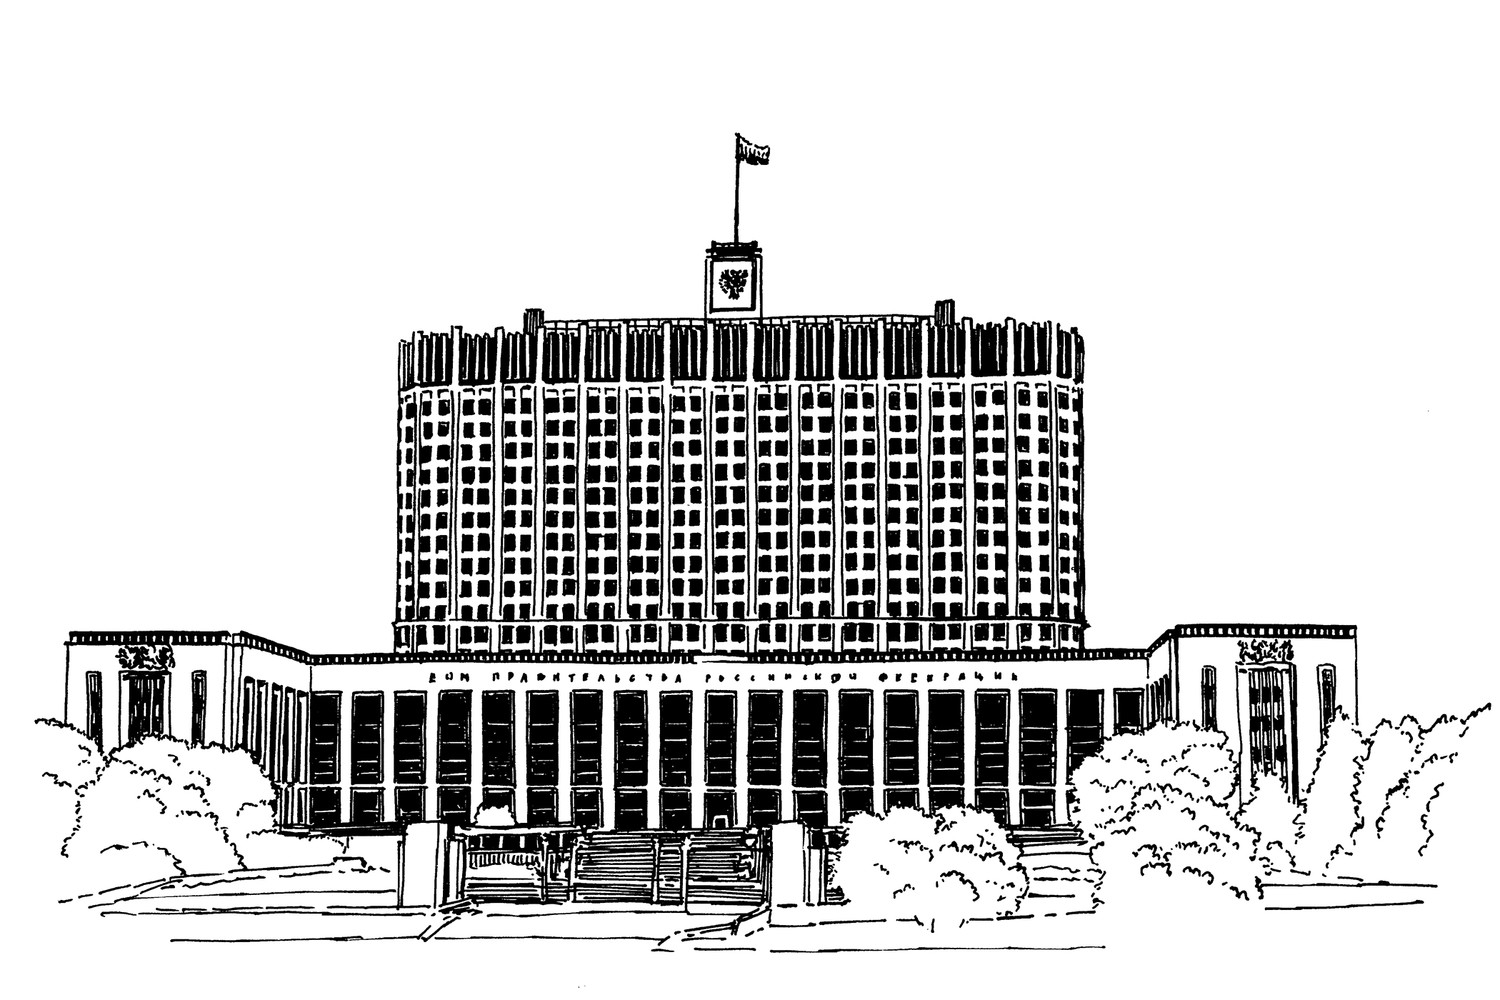 здания государственной власти в москве